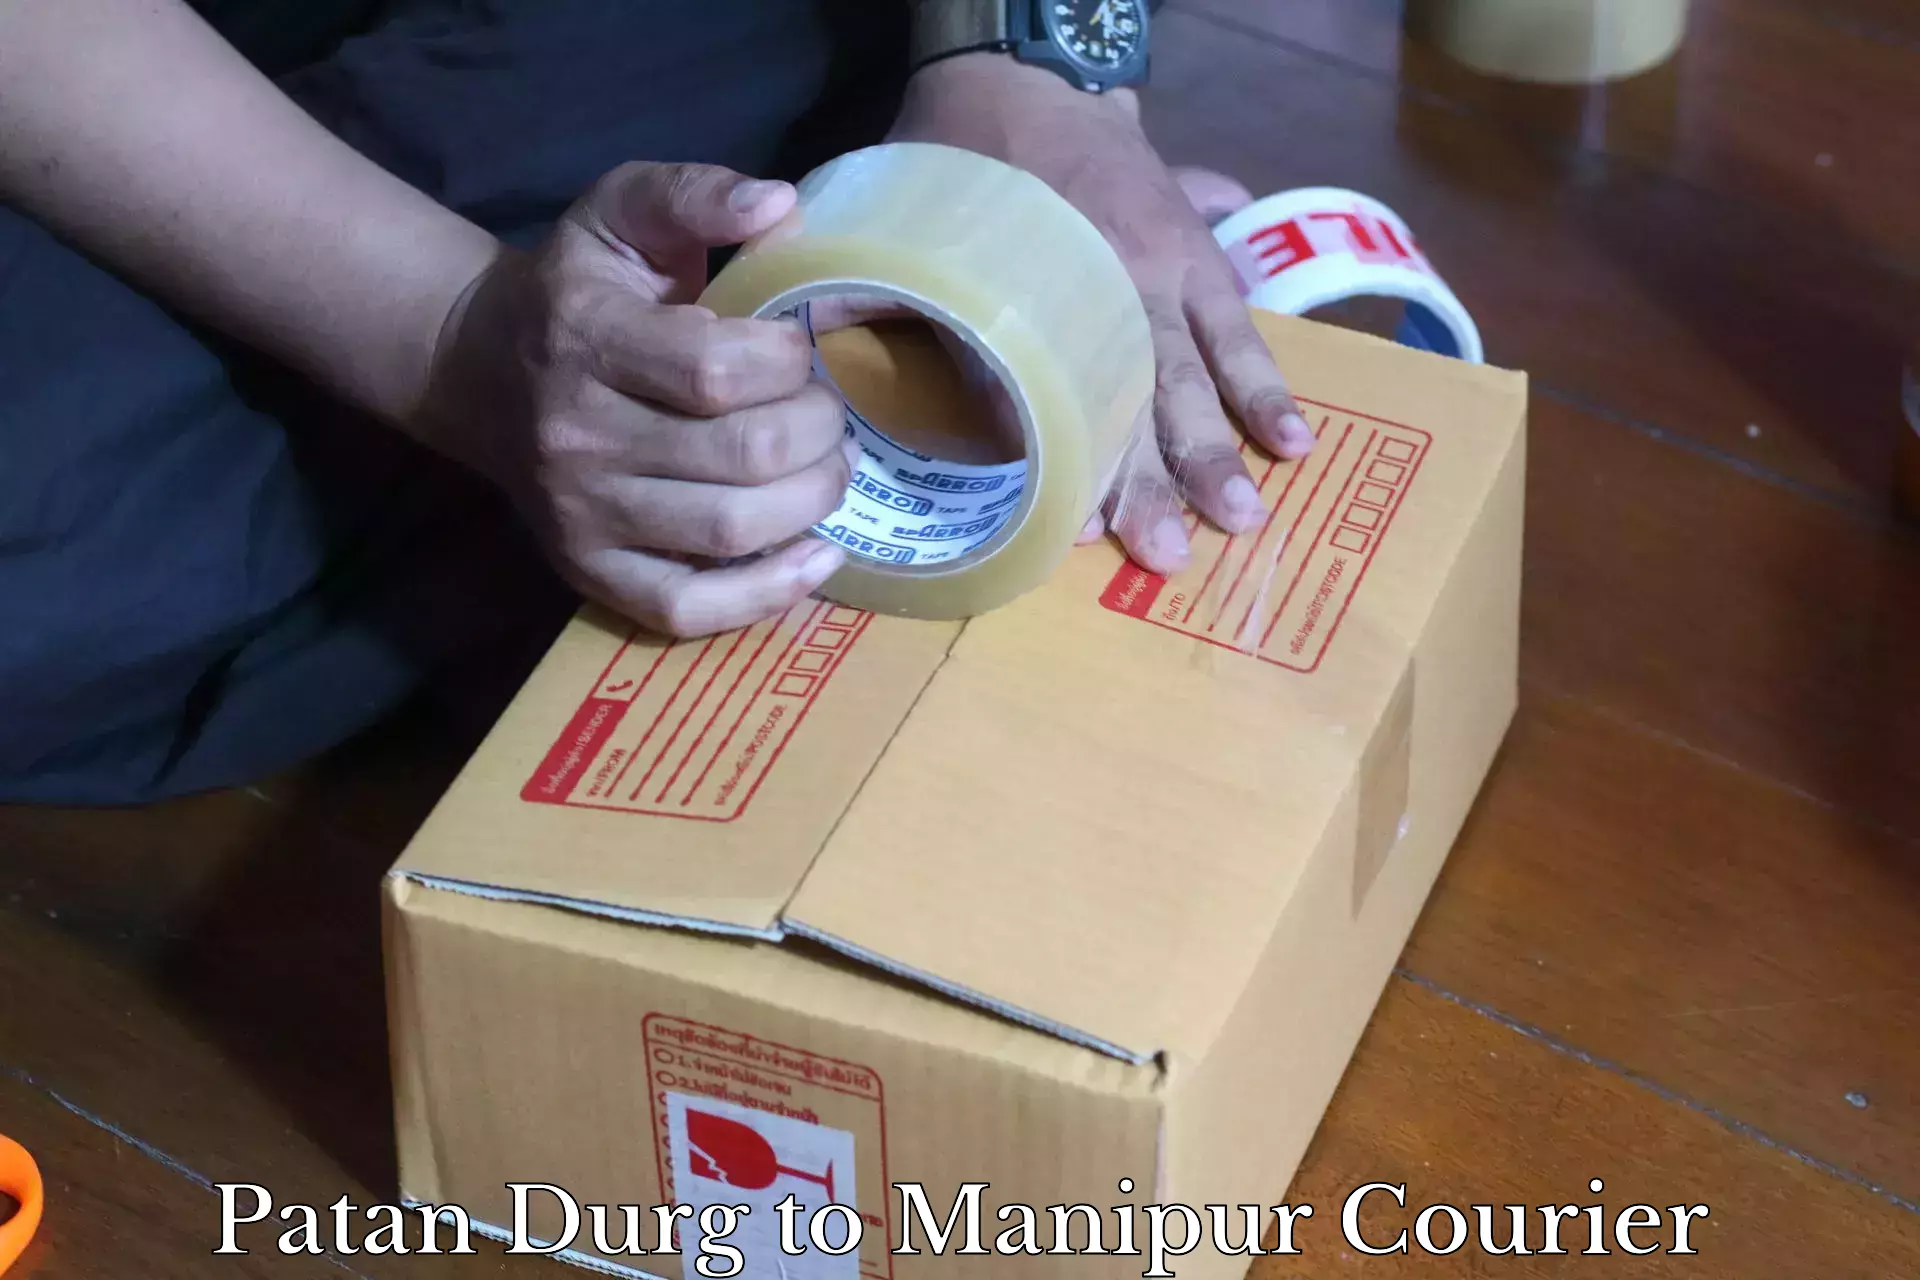 Courier service comparison Patan Durg to Kanti